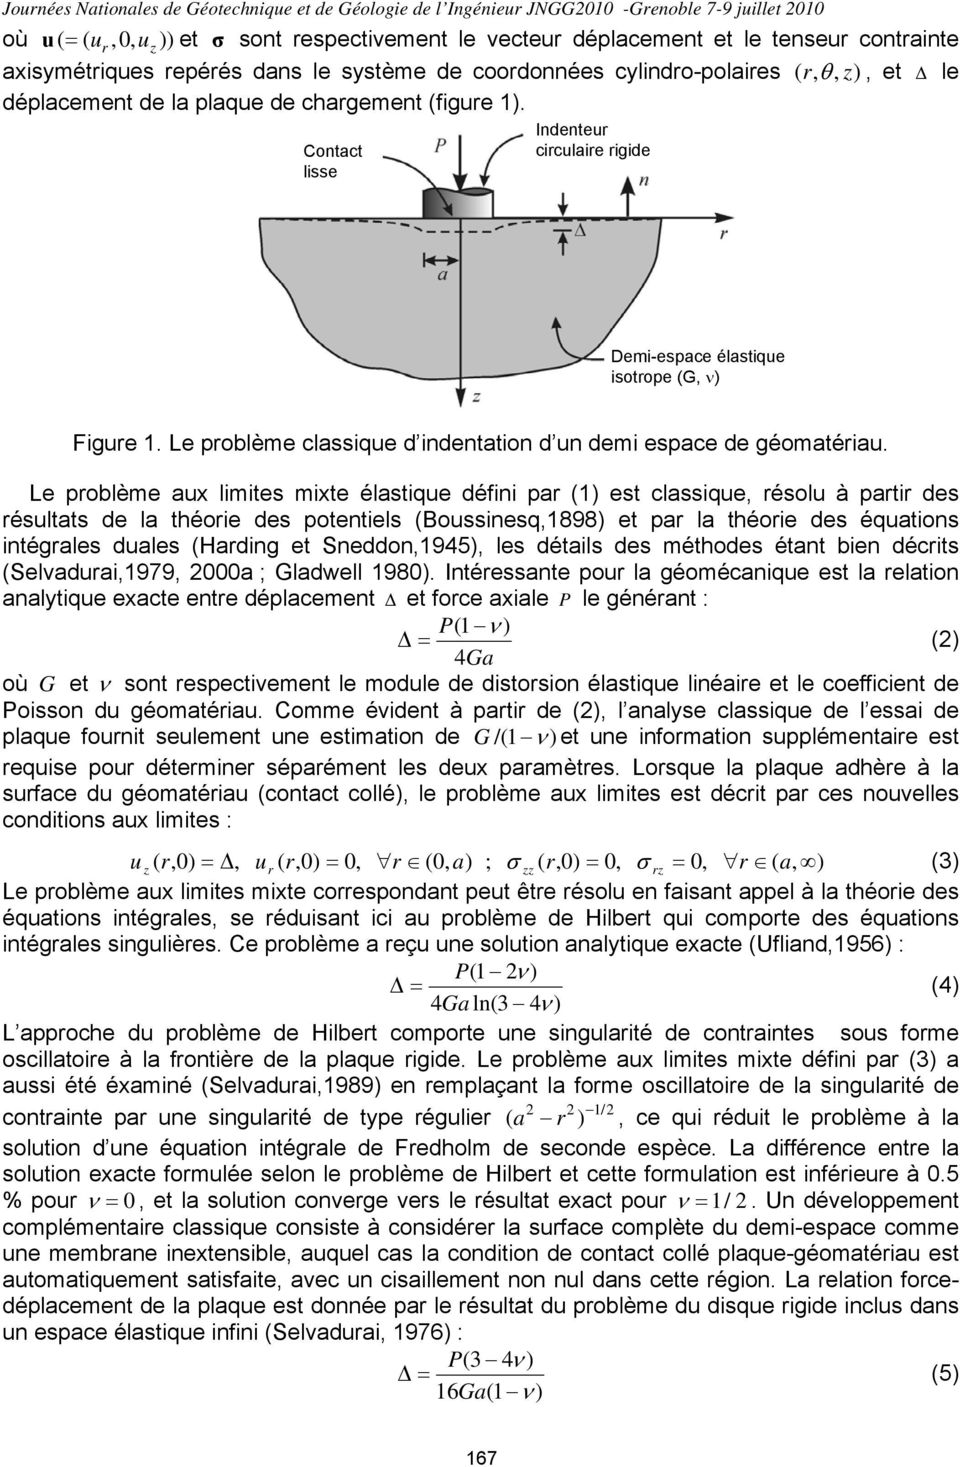 Contact lisse Indenteur circulaire rigide Demi-espace élastique isotrope (G, ν Figure 1. Le problème classique d indentation d un demi espace de géomatériau.